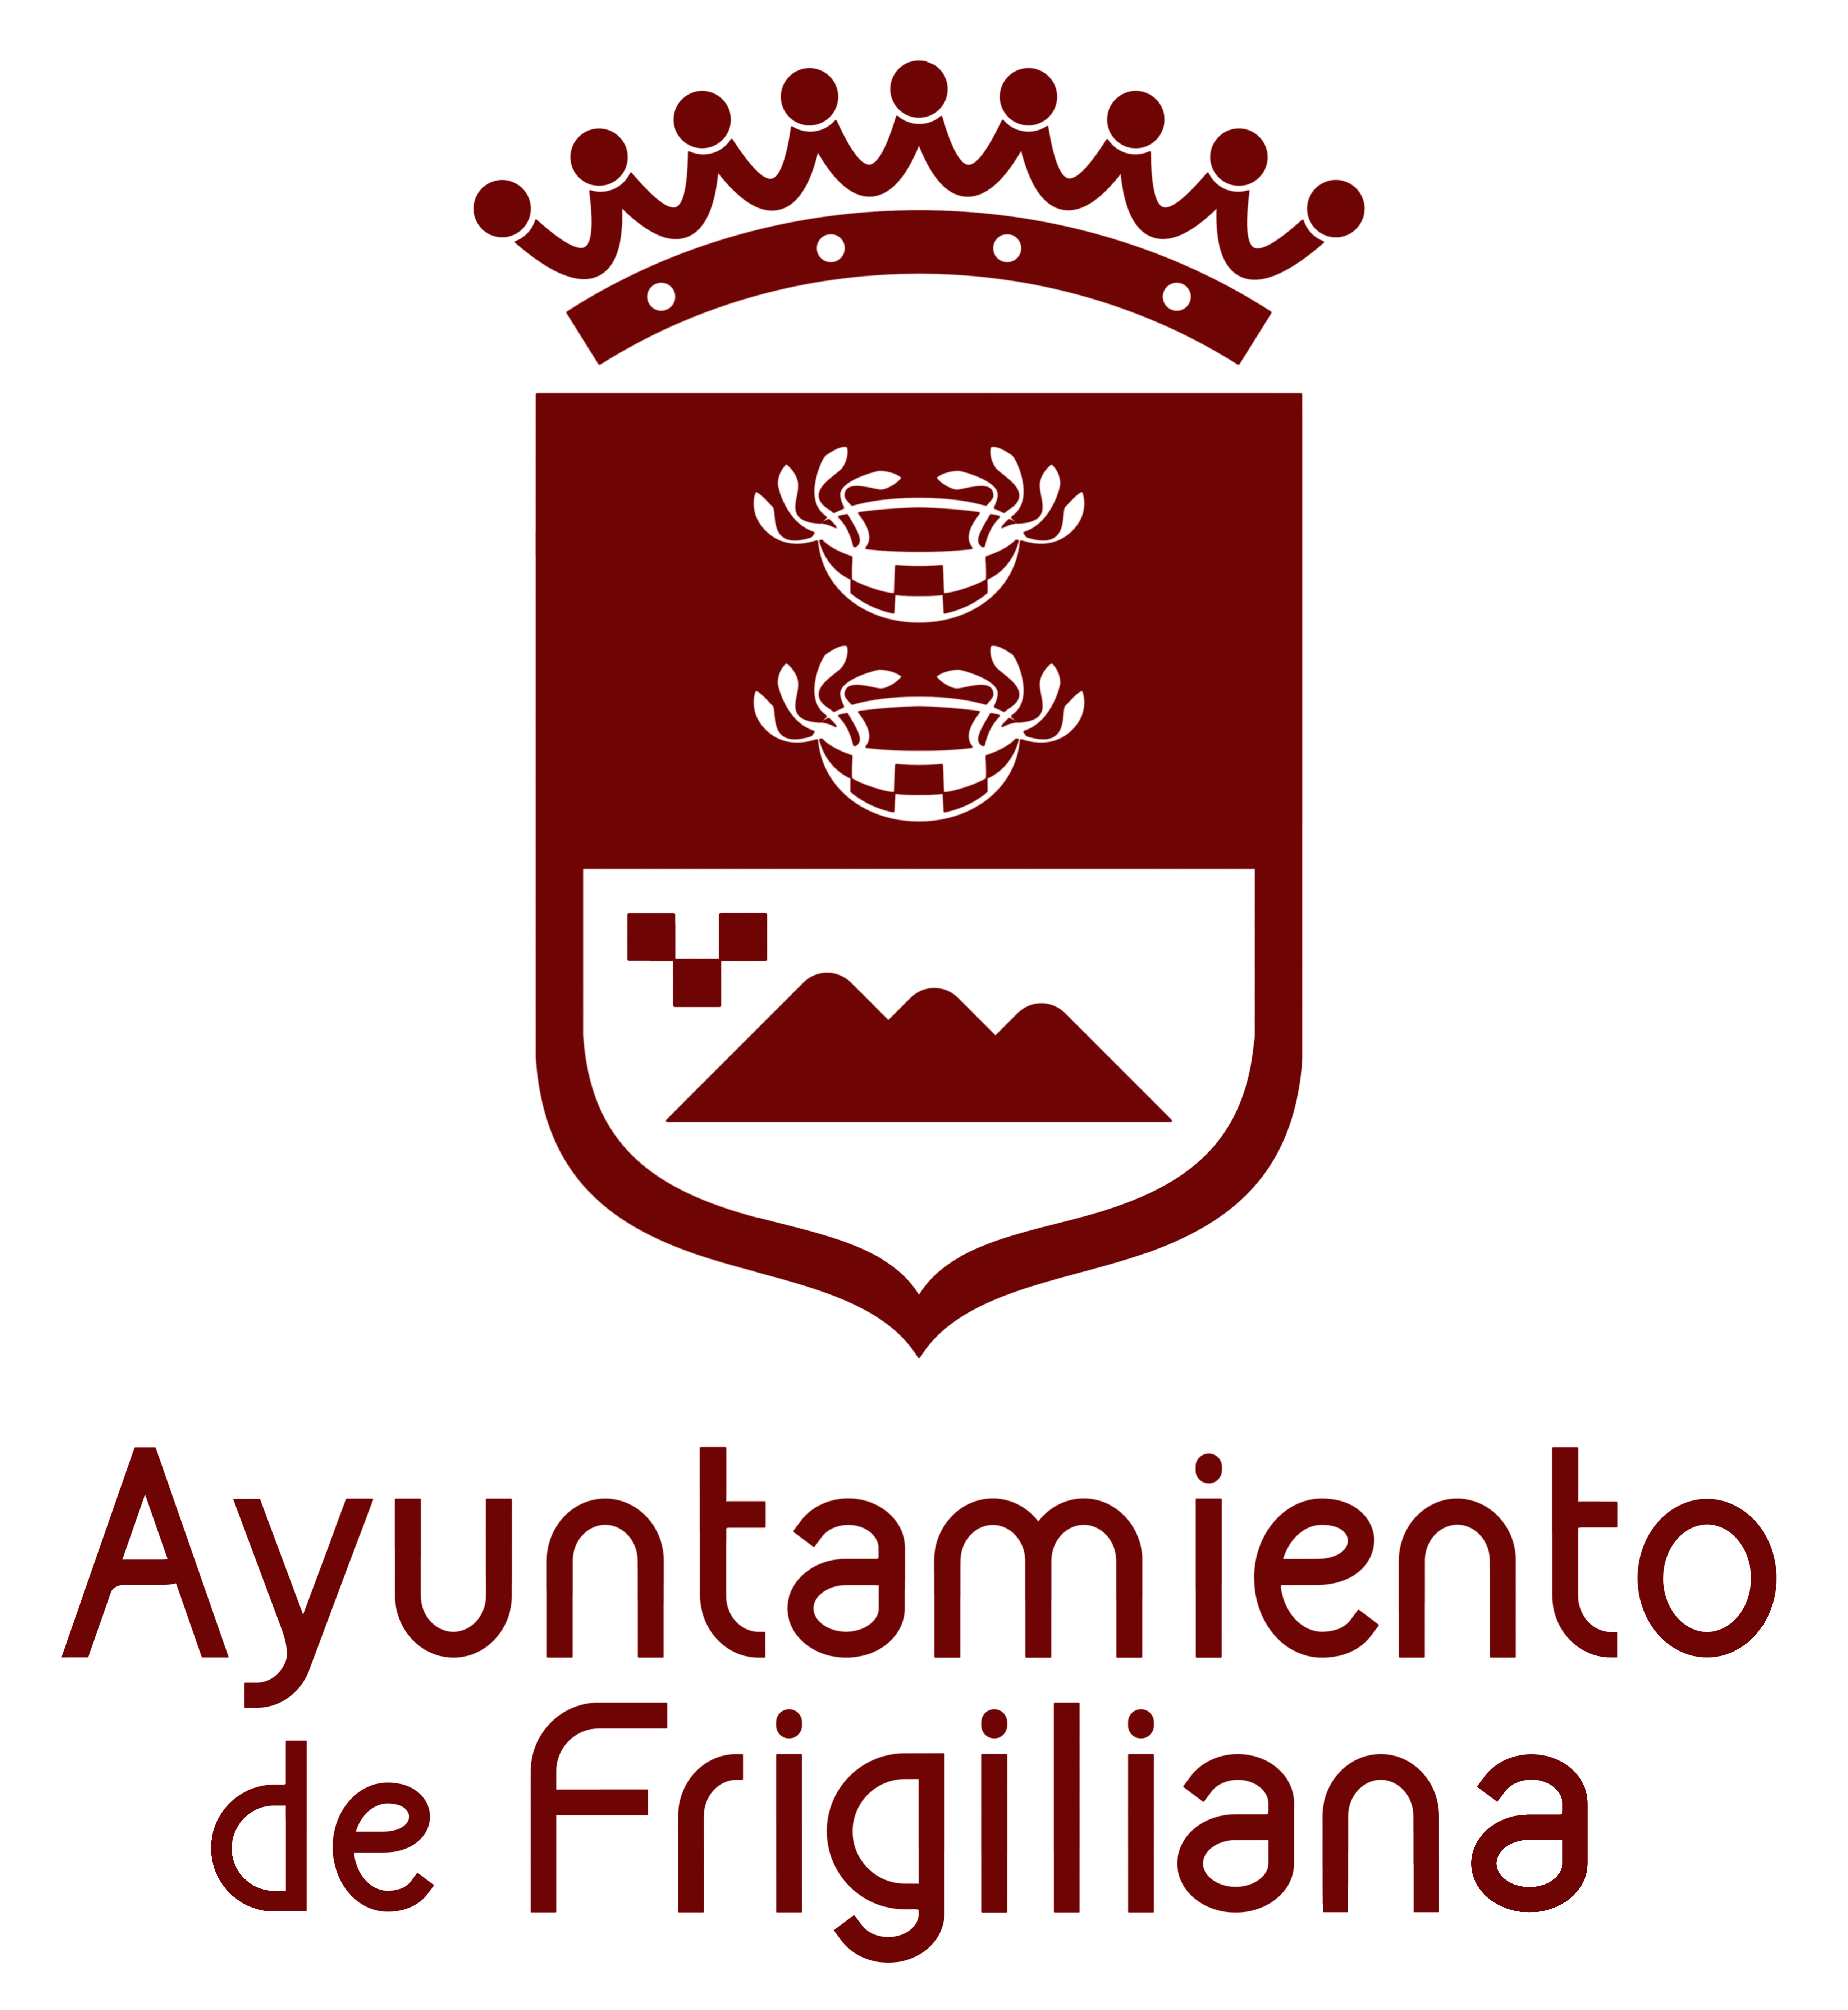 Ayuntamiento de Frigiliana